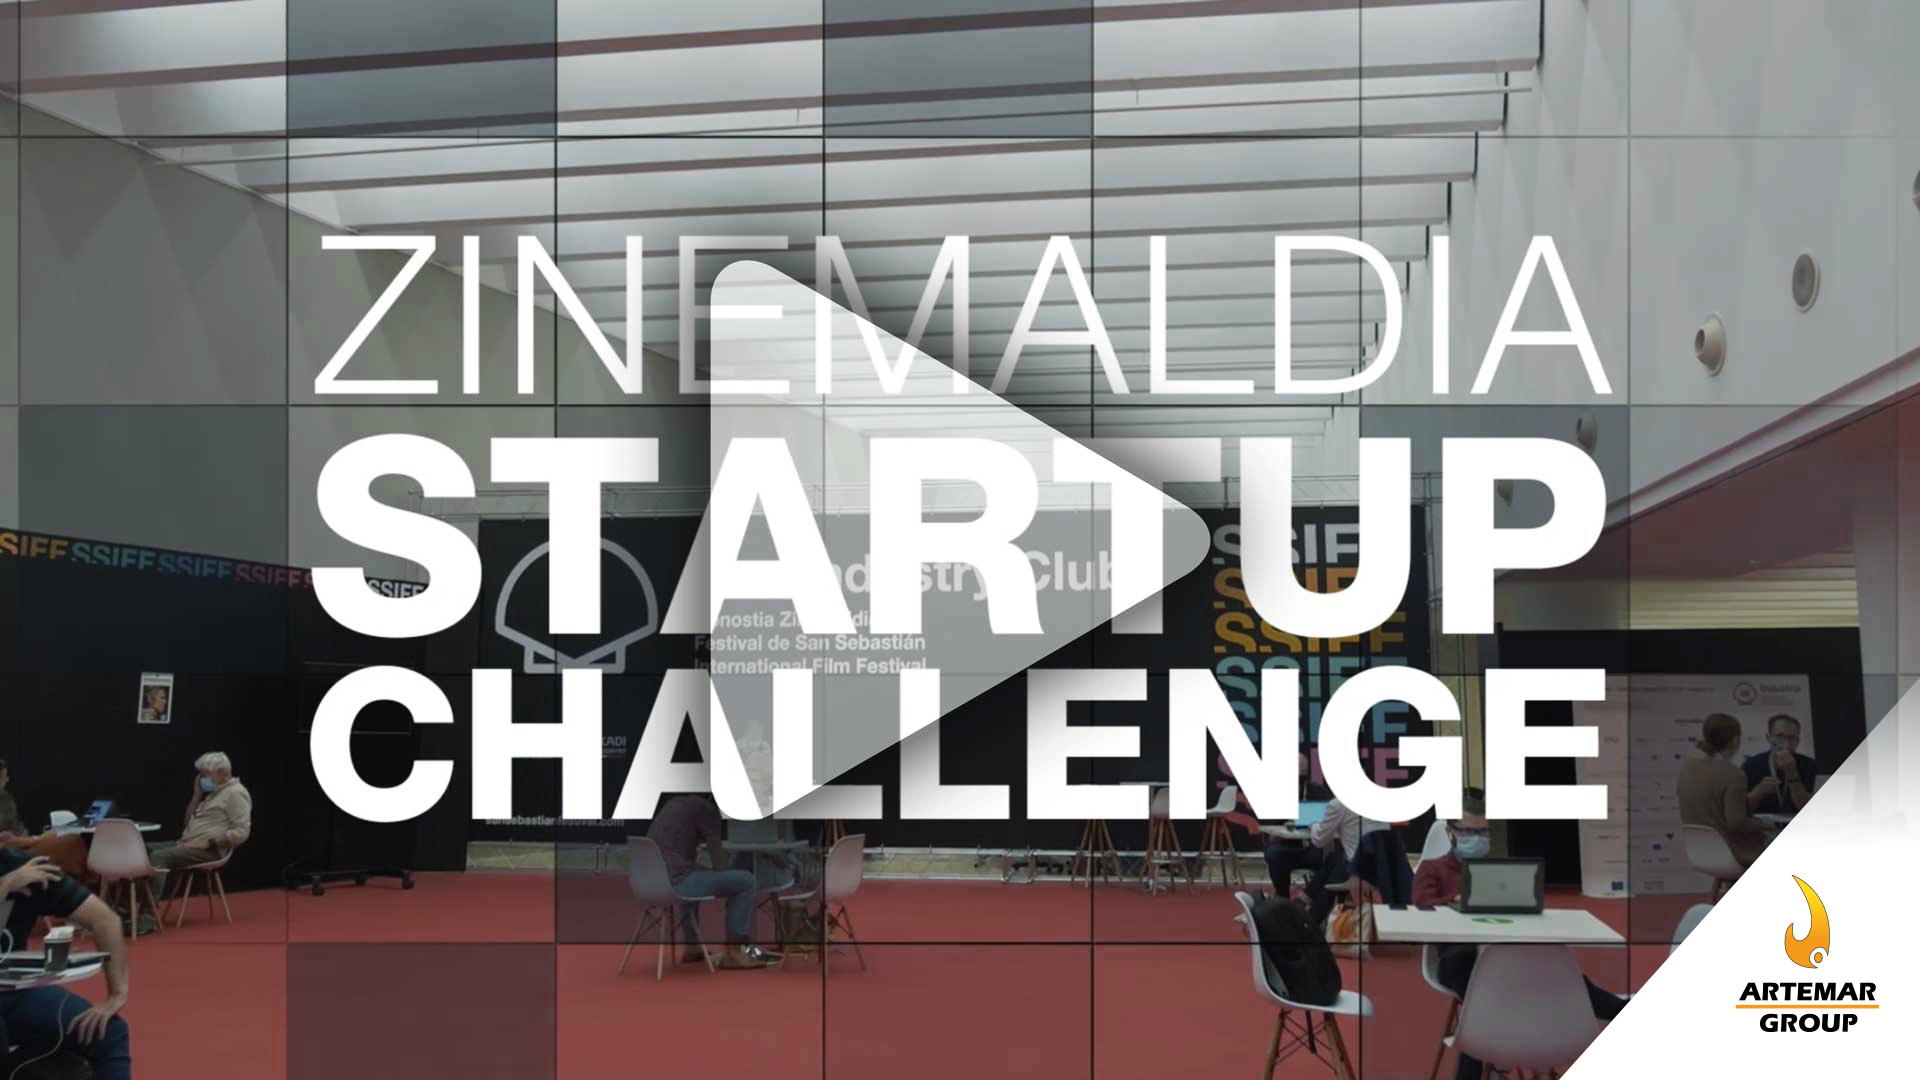 Zinemaldia Startup Challenge: 10 proyectos innovadores de metaverso, IA, machine learning y realidad aumentada competirán en el festival de cine de San Sebastián